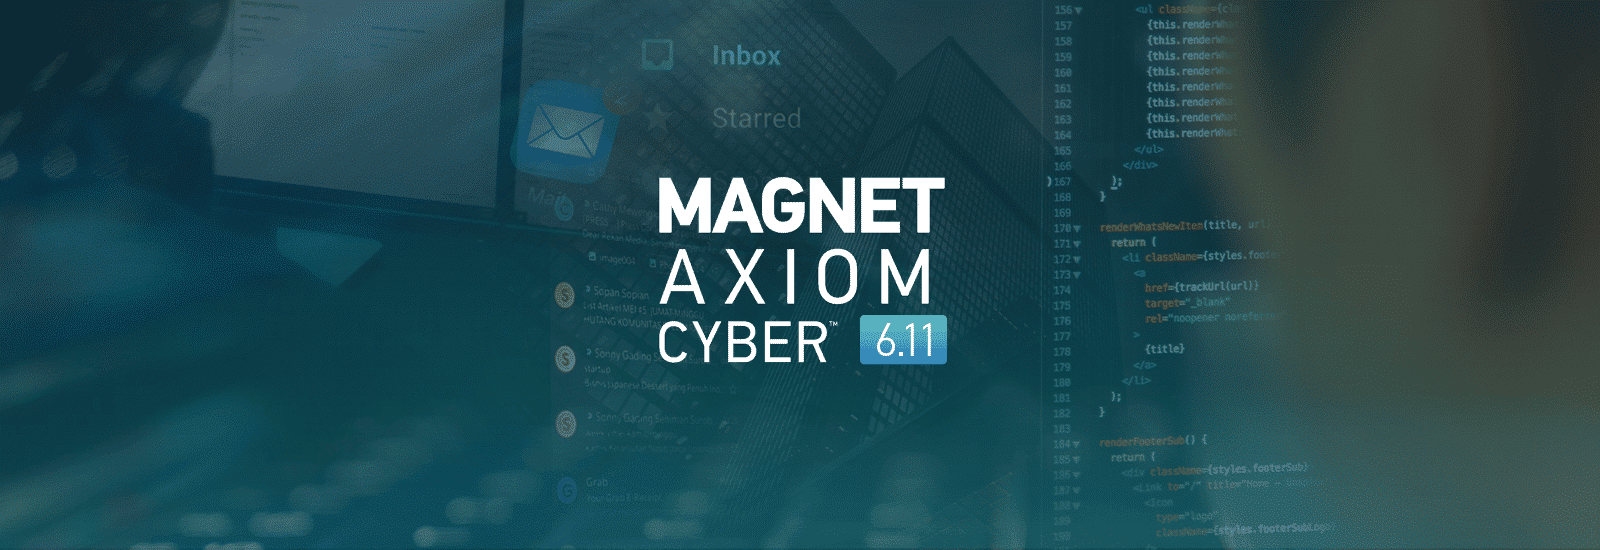 Magnet AXIOM Cyber 6.11